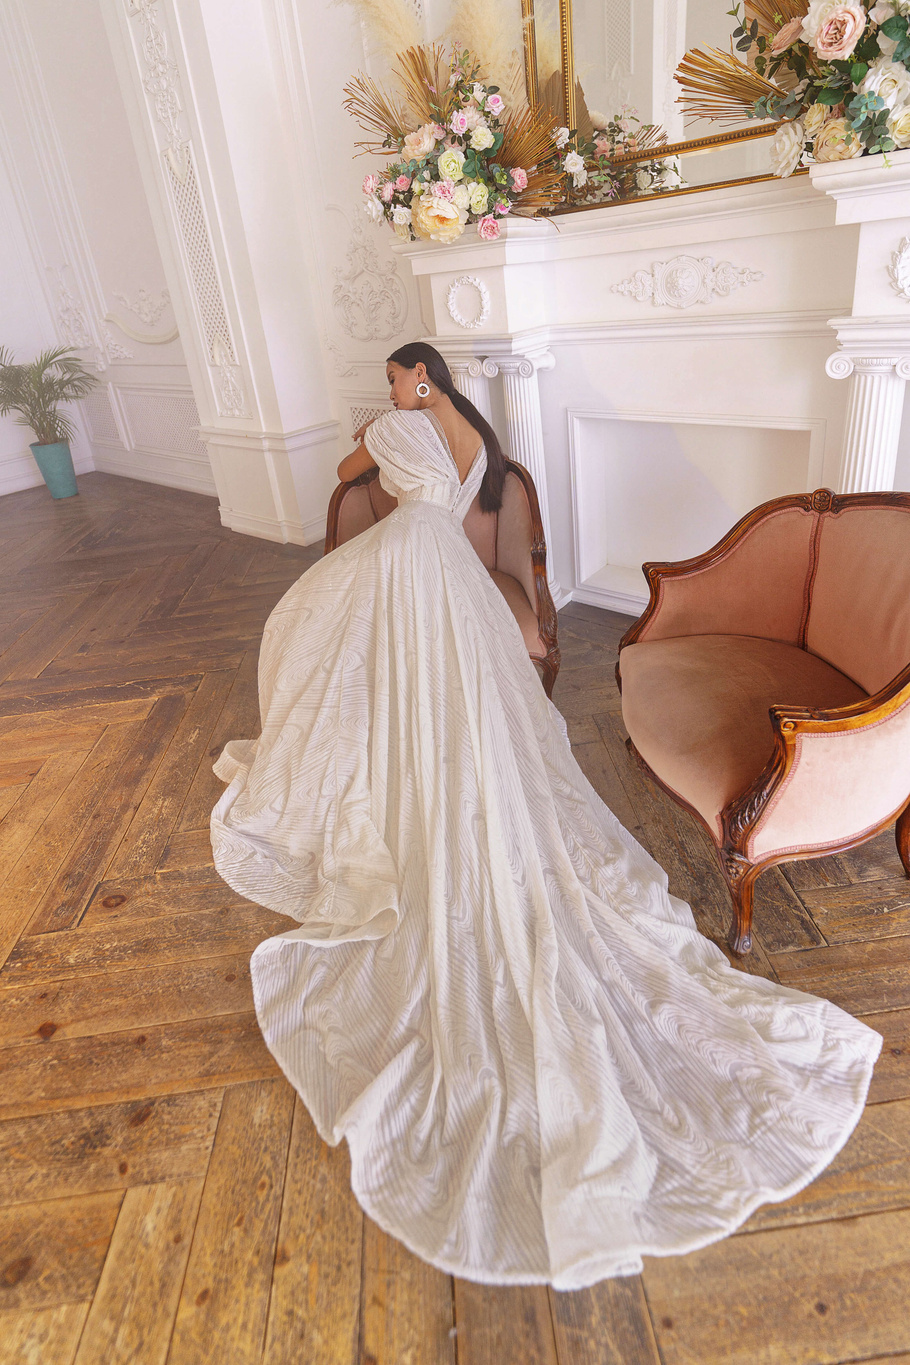 Купить свадебное платье «Жасмин» Рара Авис из коллекции Искра 2021 года в интернет-магазине